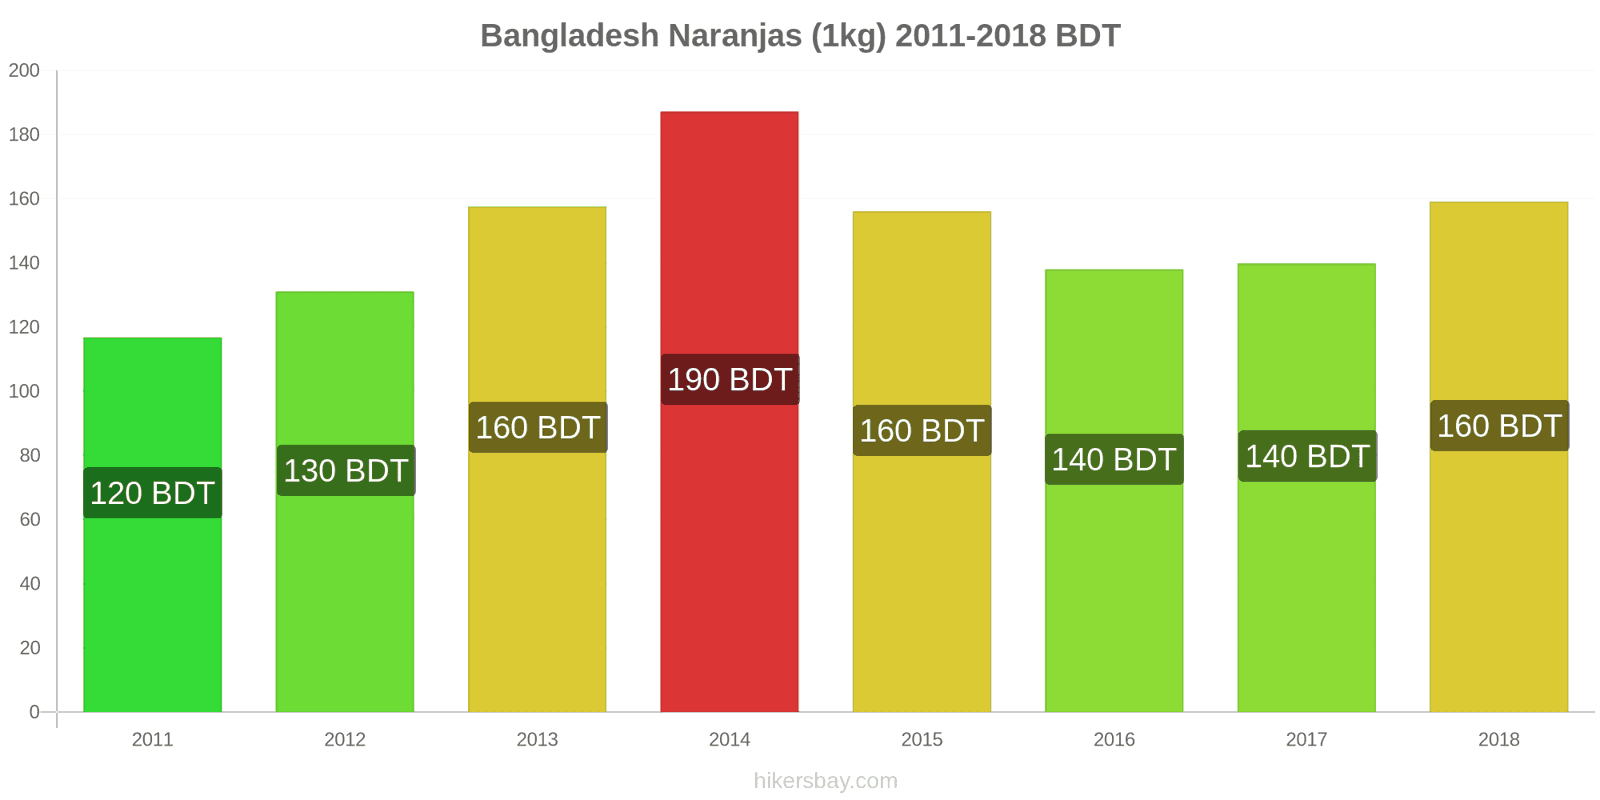 Bangladesh cambios de precios Naranjas (1kg) hikersbay.com